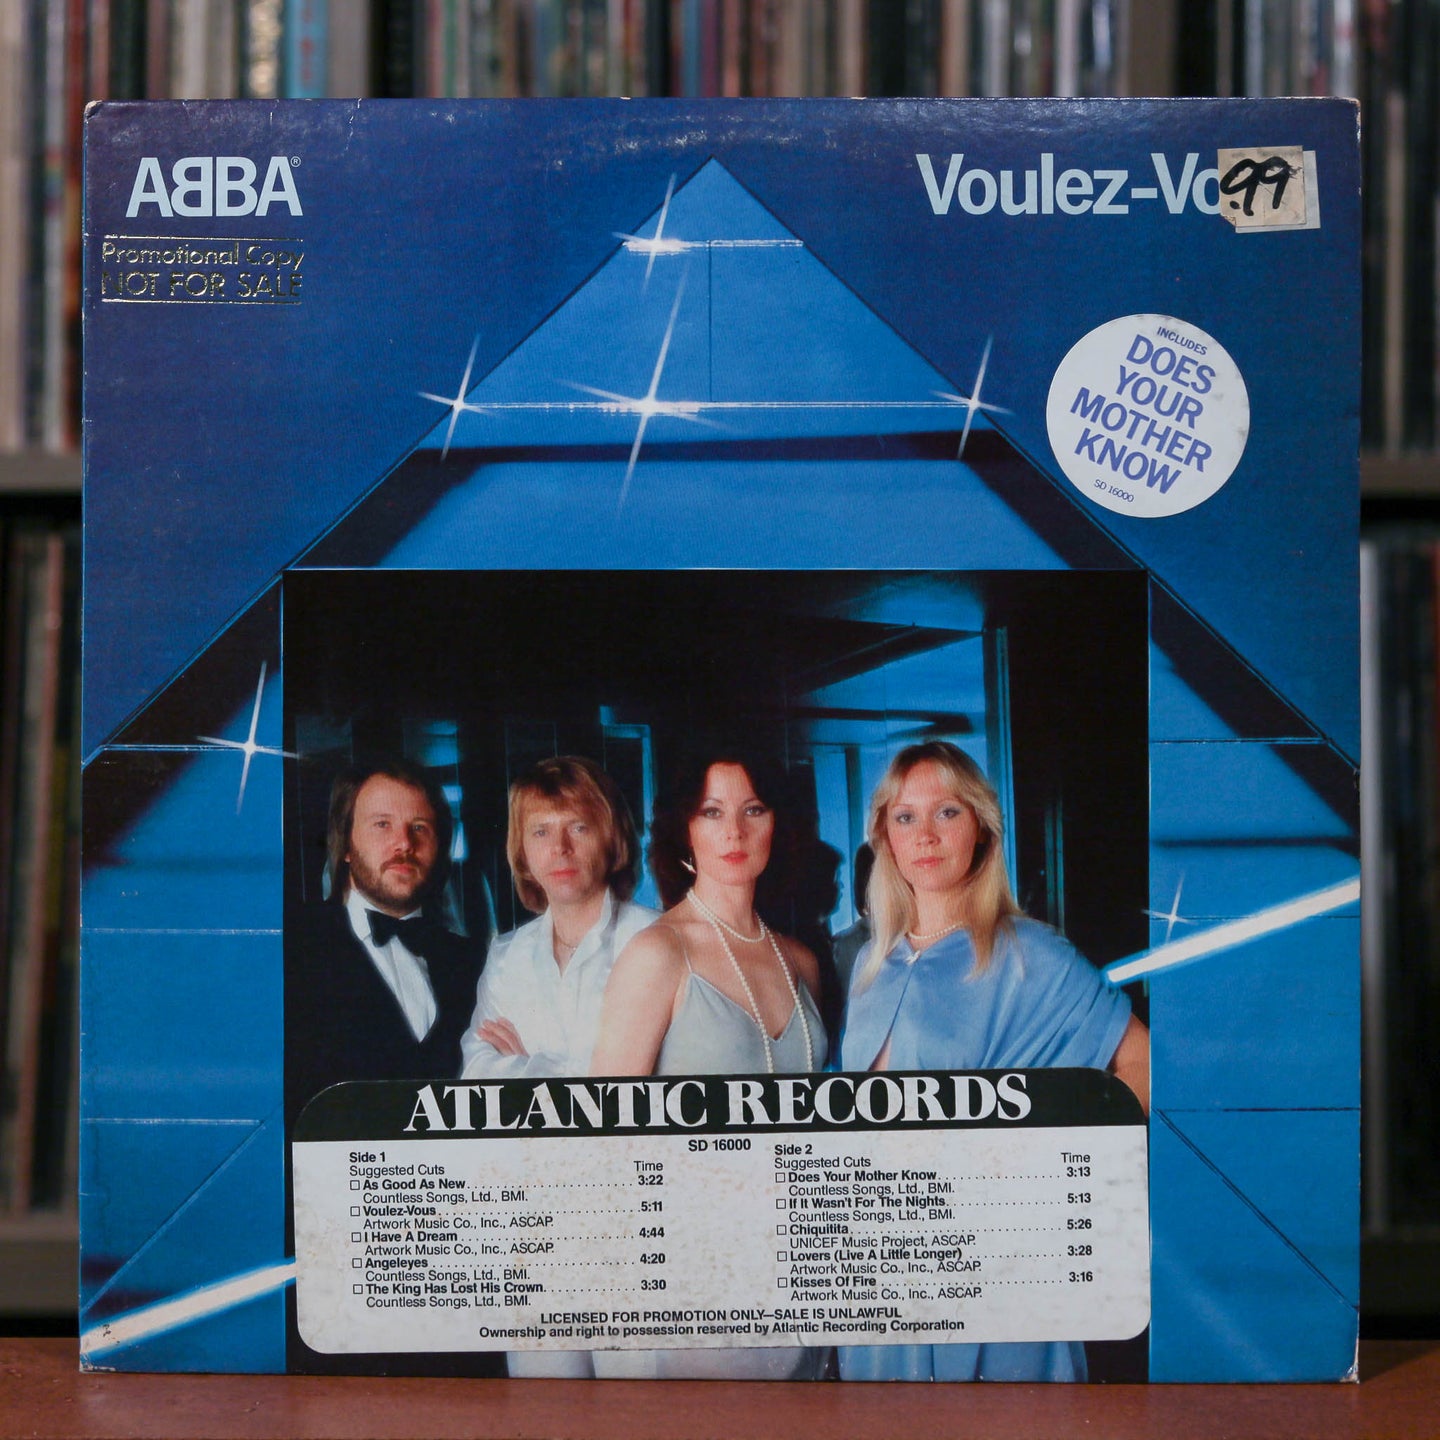 Abba - 2 Album Bundle - Promo - The Singles, Voulez-Vous - VG+/VG+